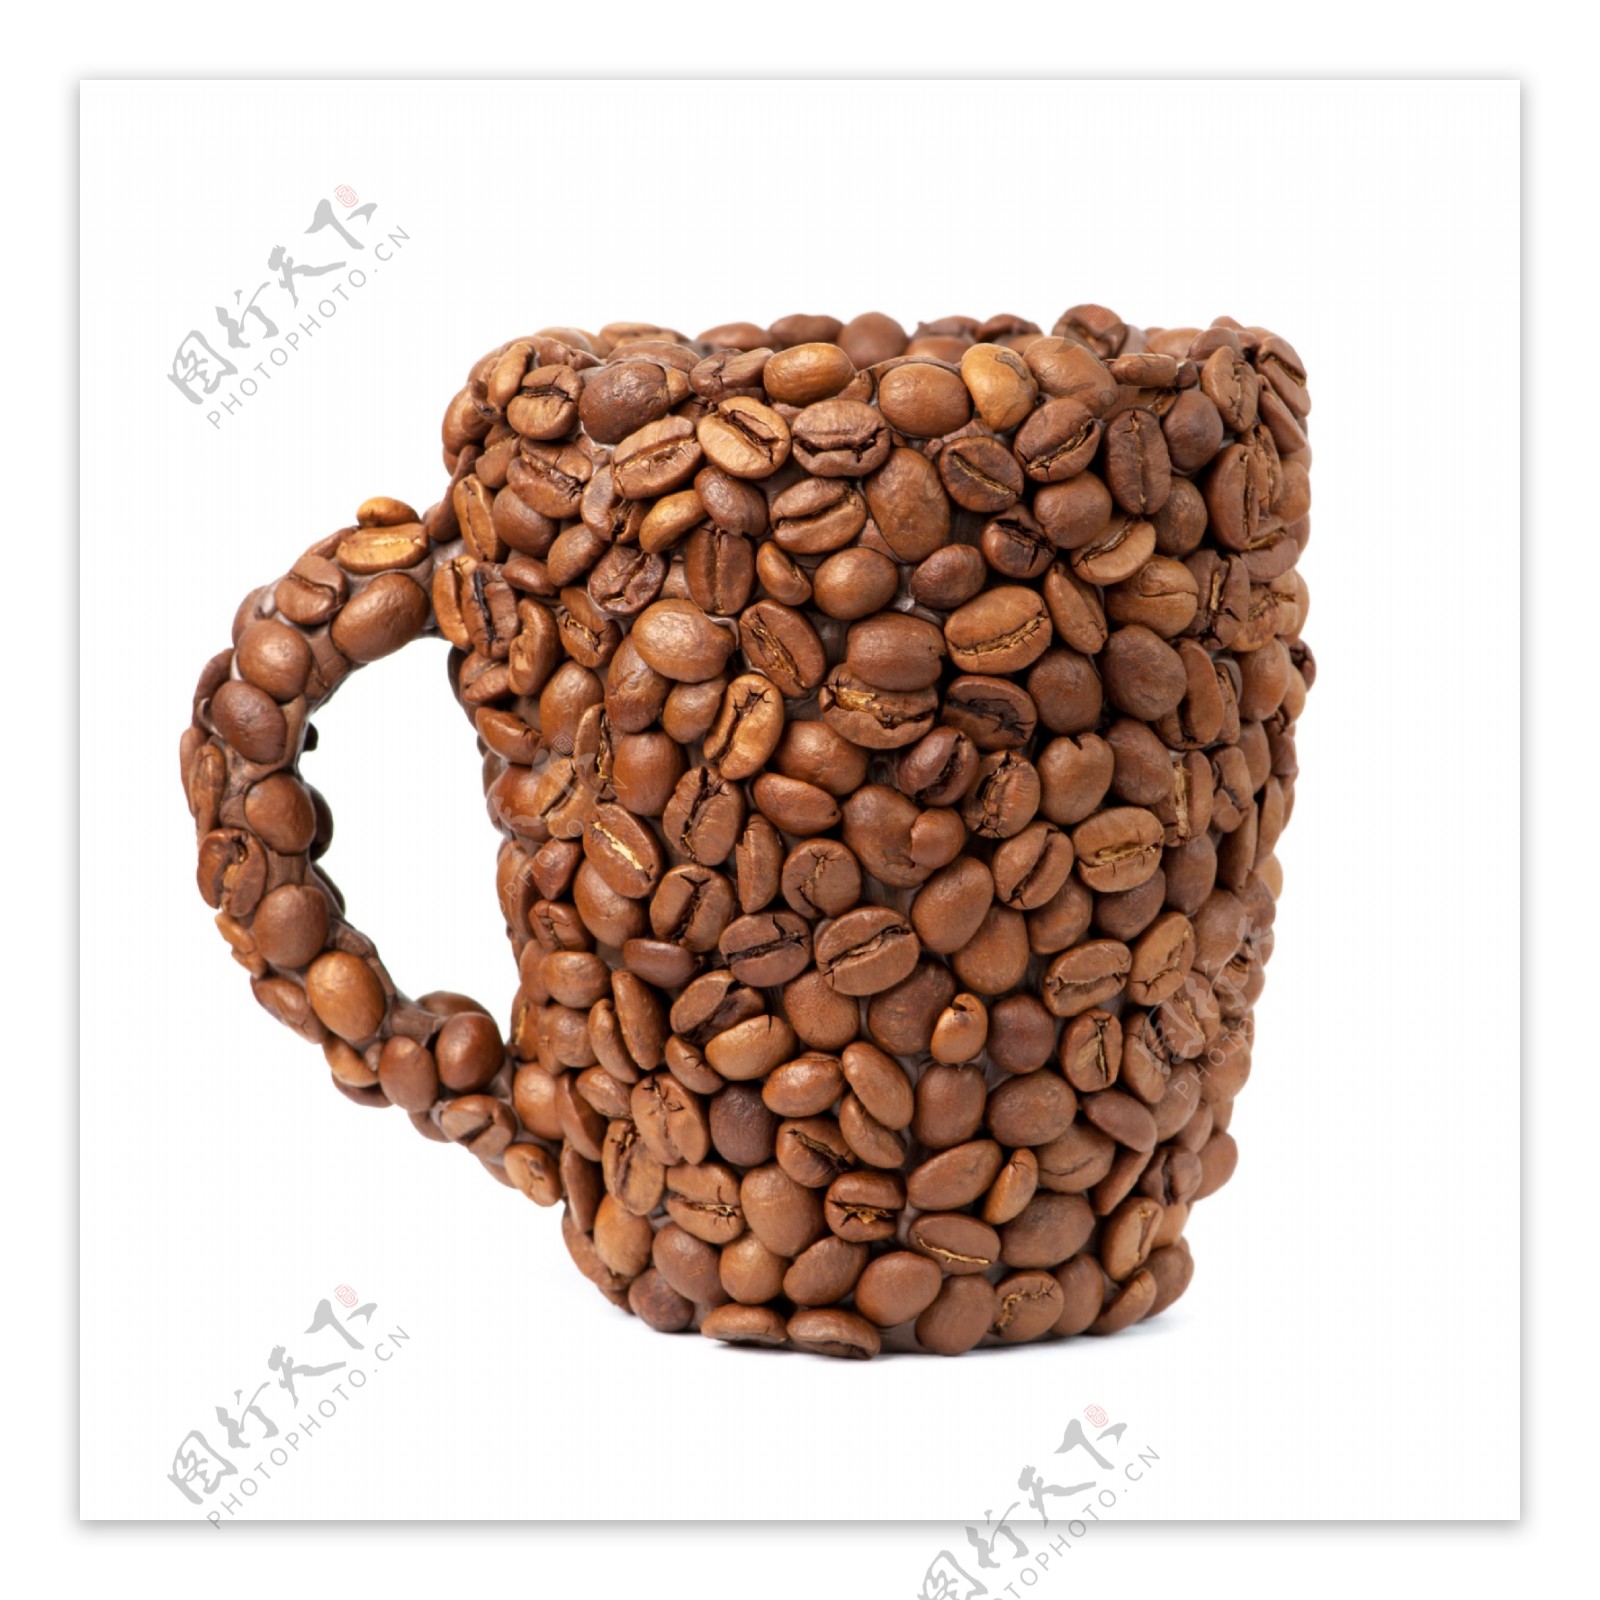 咖啡豆组成的杯子图片